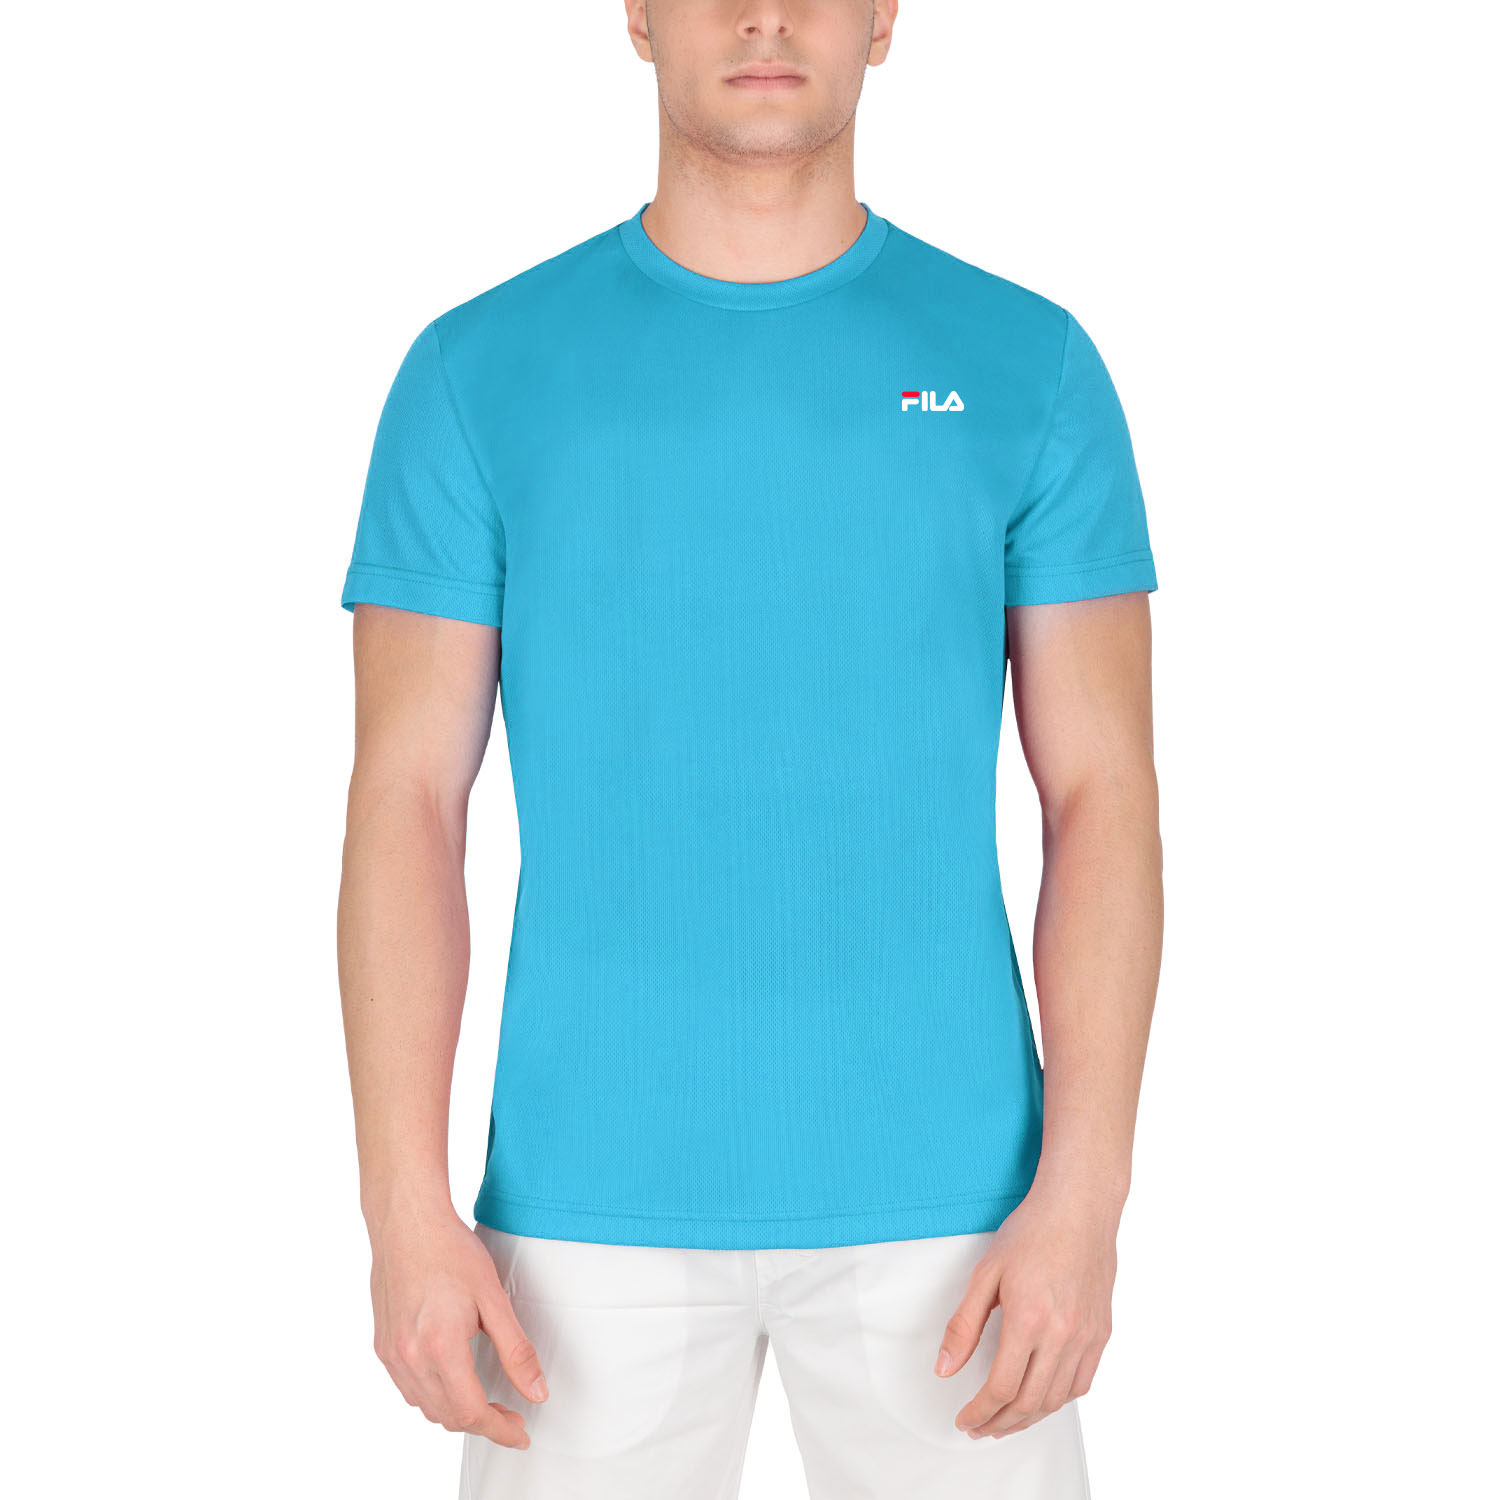 Fila Logo T-Shirt - Hawaiian Ocean